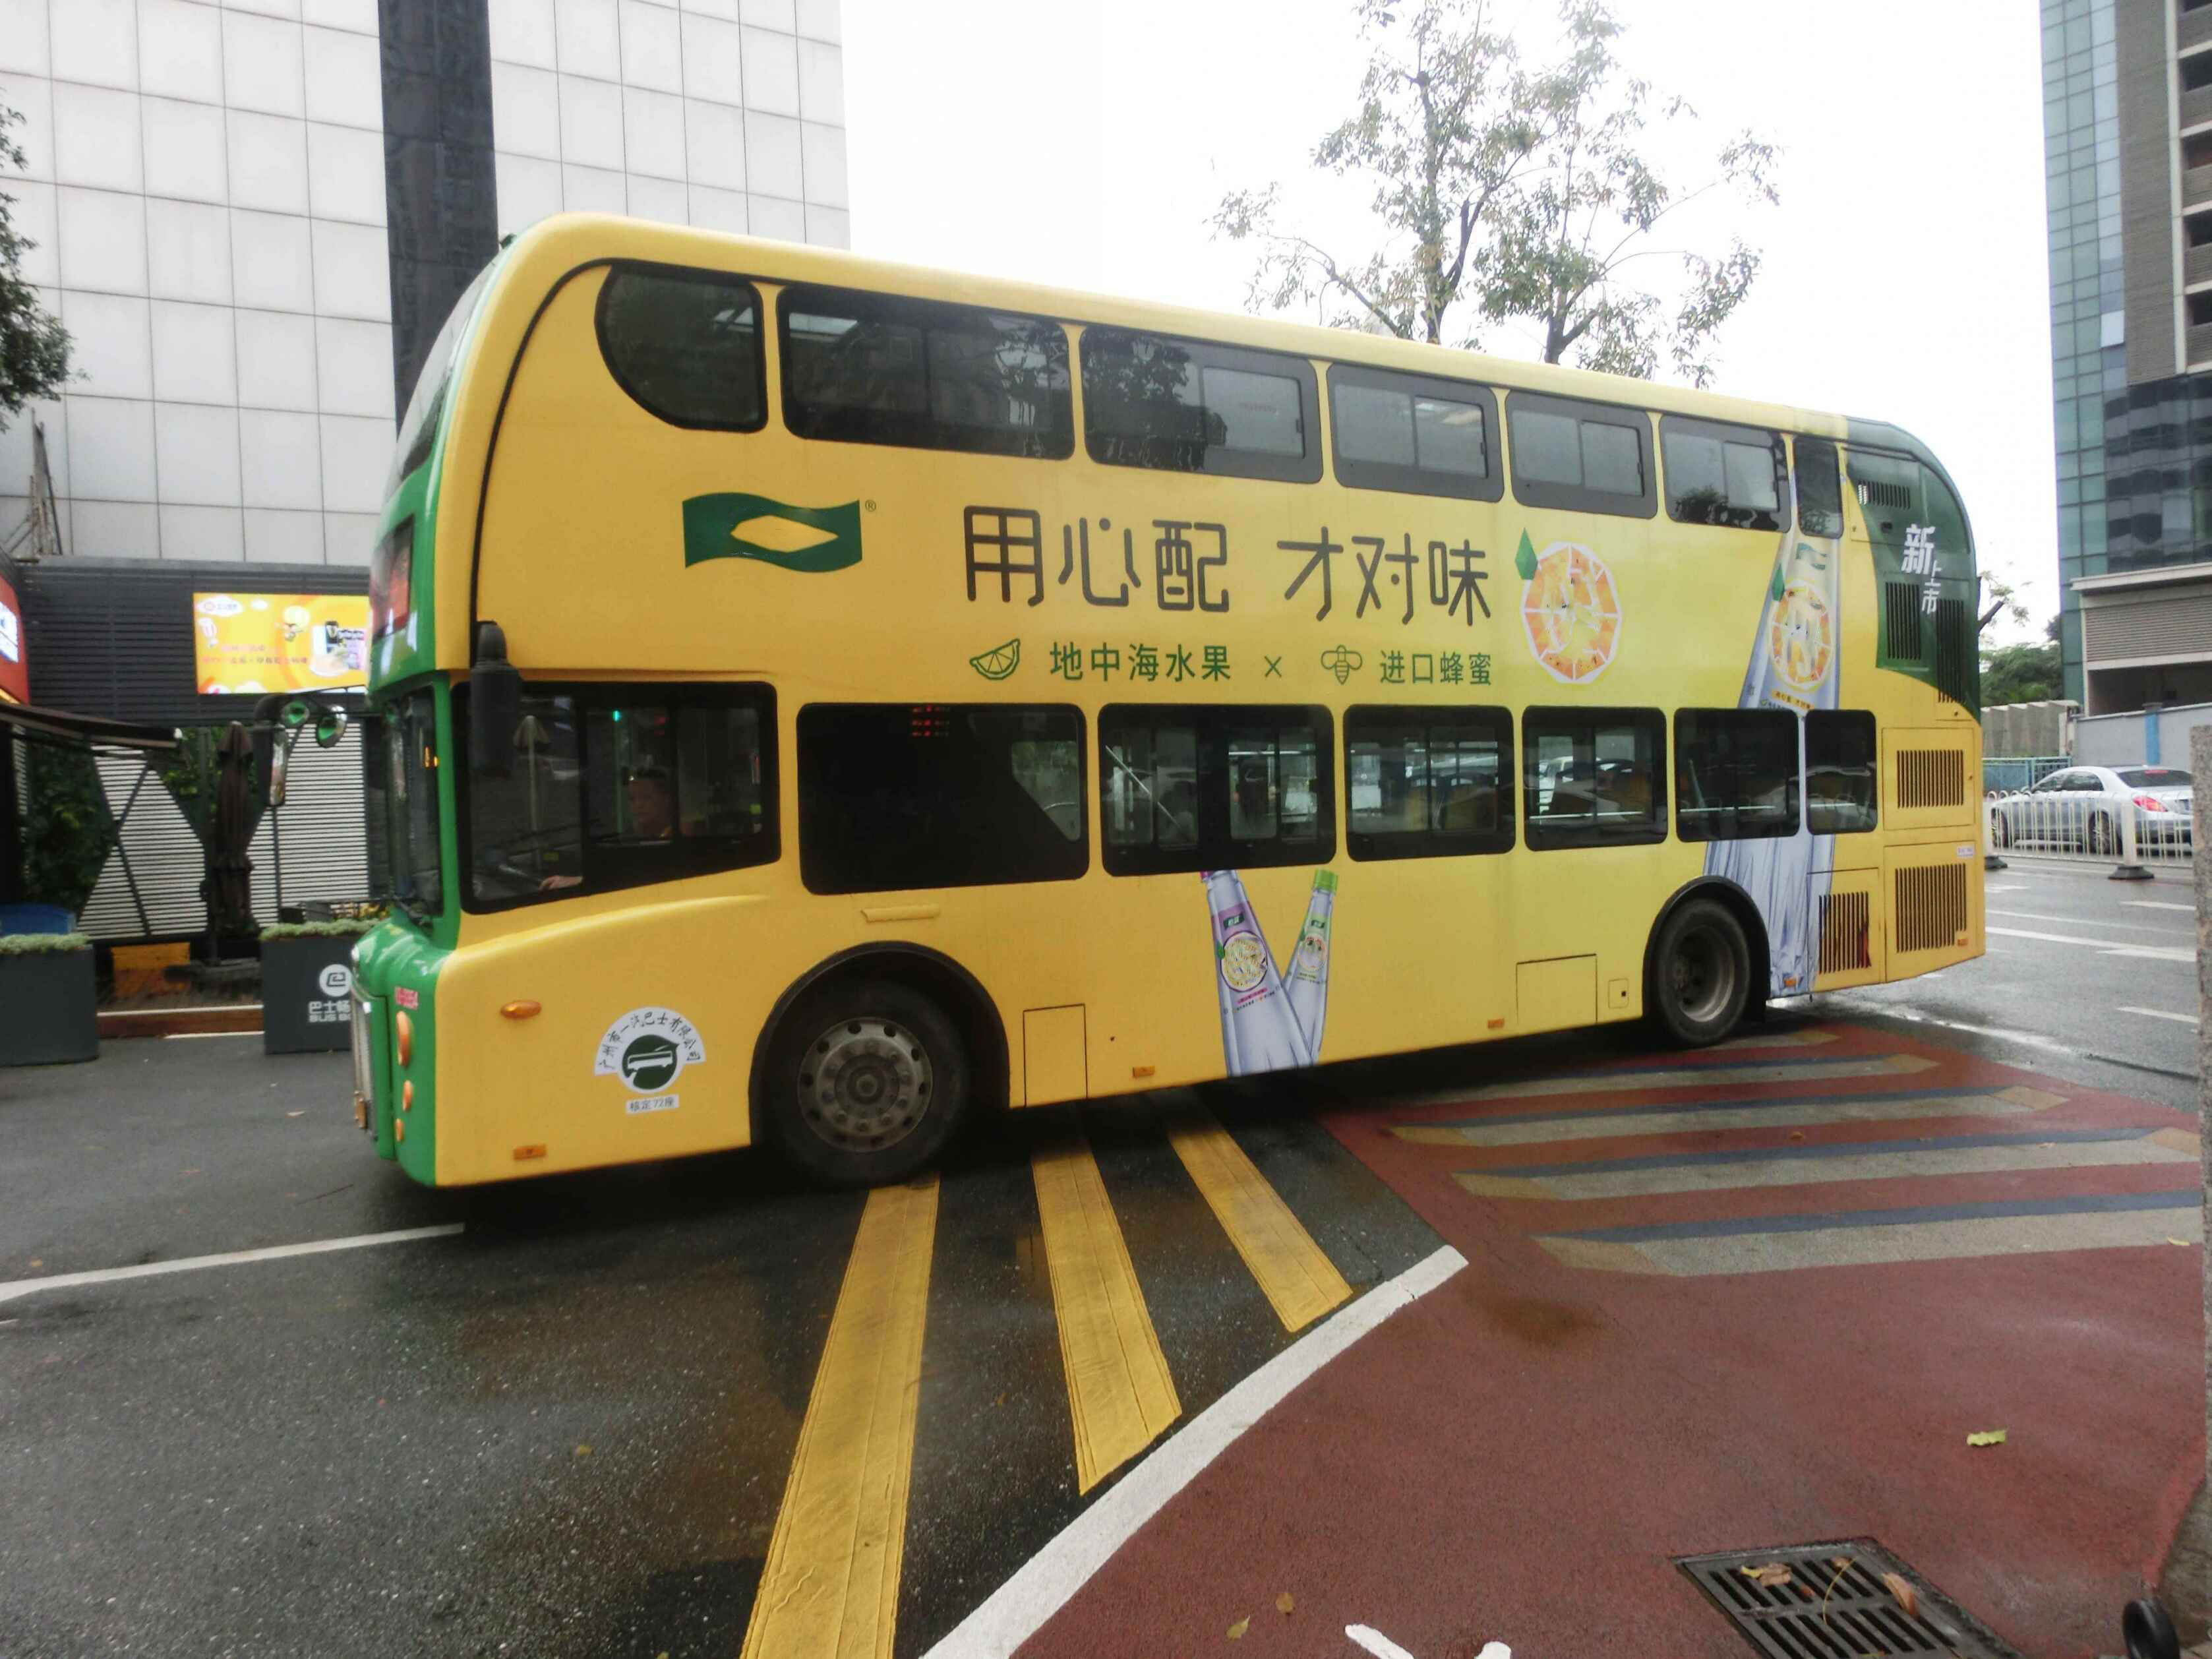 广州市的公共汽车车票一版-价格:10元-se92540444-汽车票-零售-7788收藏__收藏热线